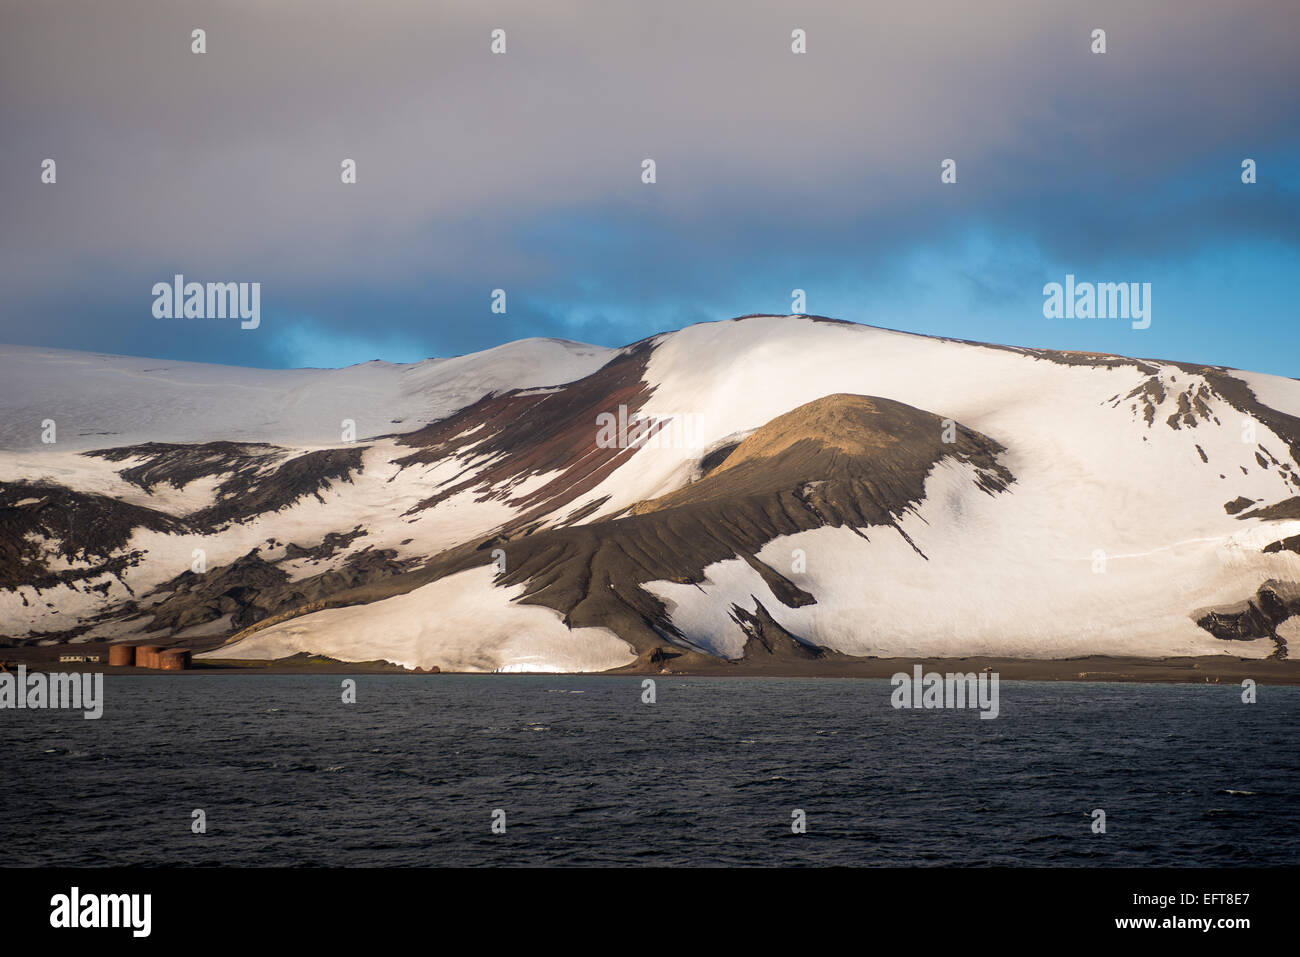 Am späten Nachmittag bedeckt Schnee Lavaasche auf Deception Island Süd-Shetlandinseln, Antarktis, Polarregionen Stockfoto